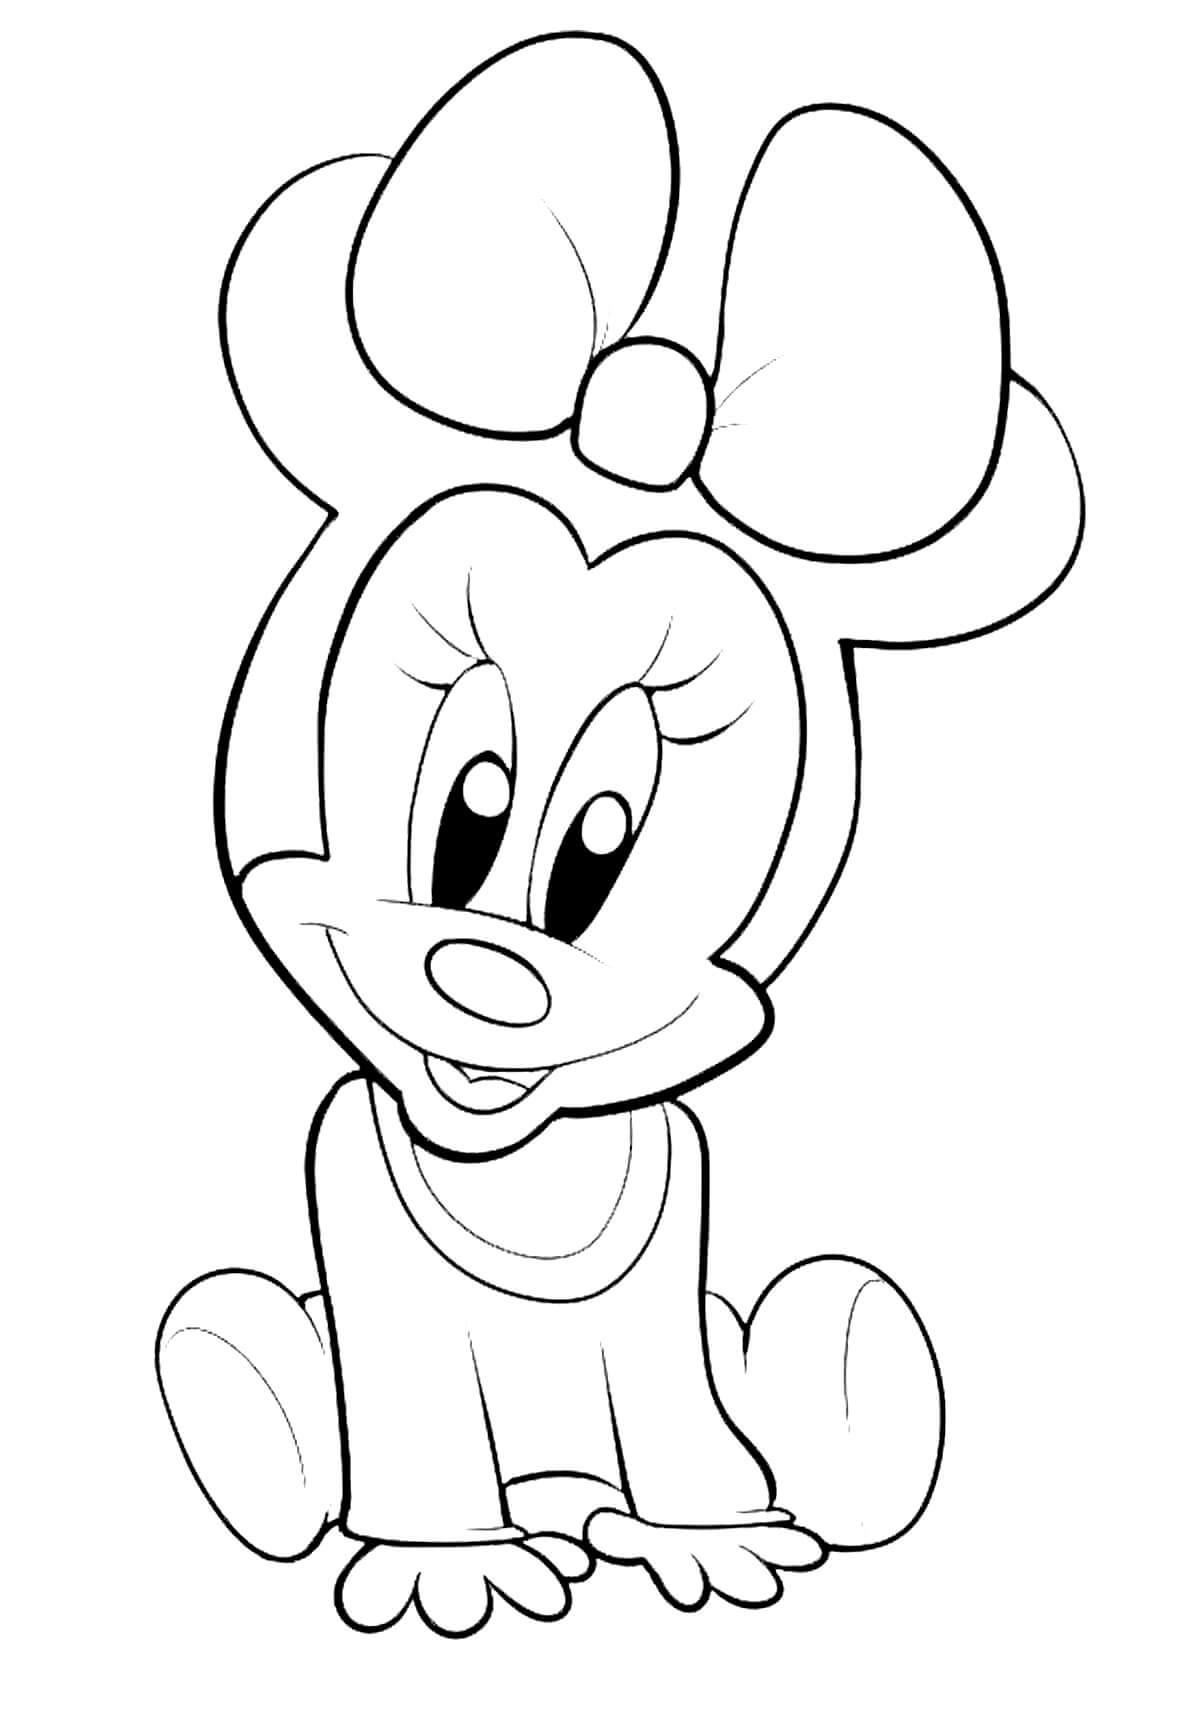 Bébé Minnie coloring page